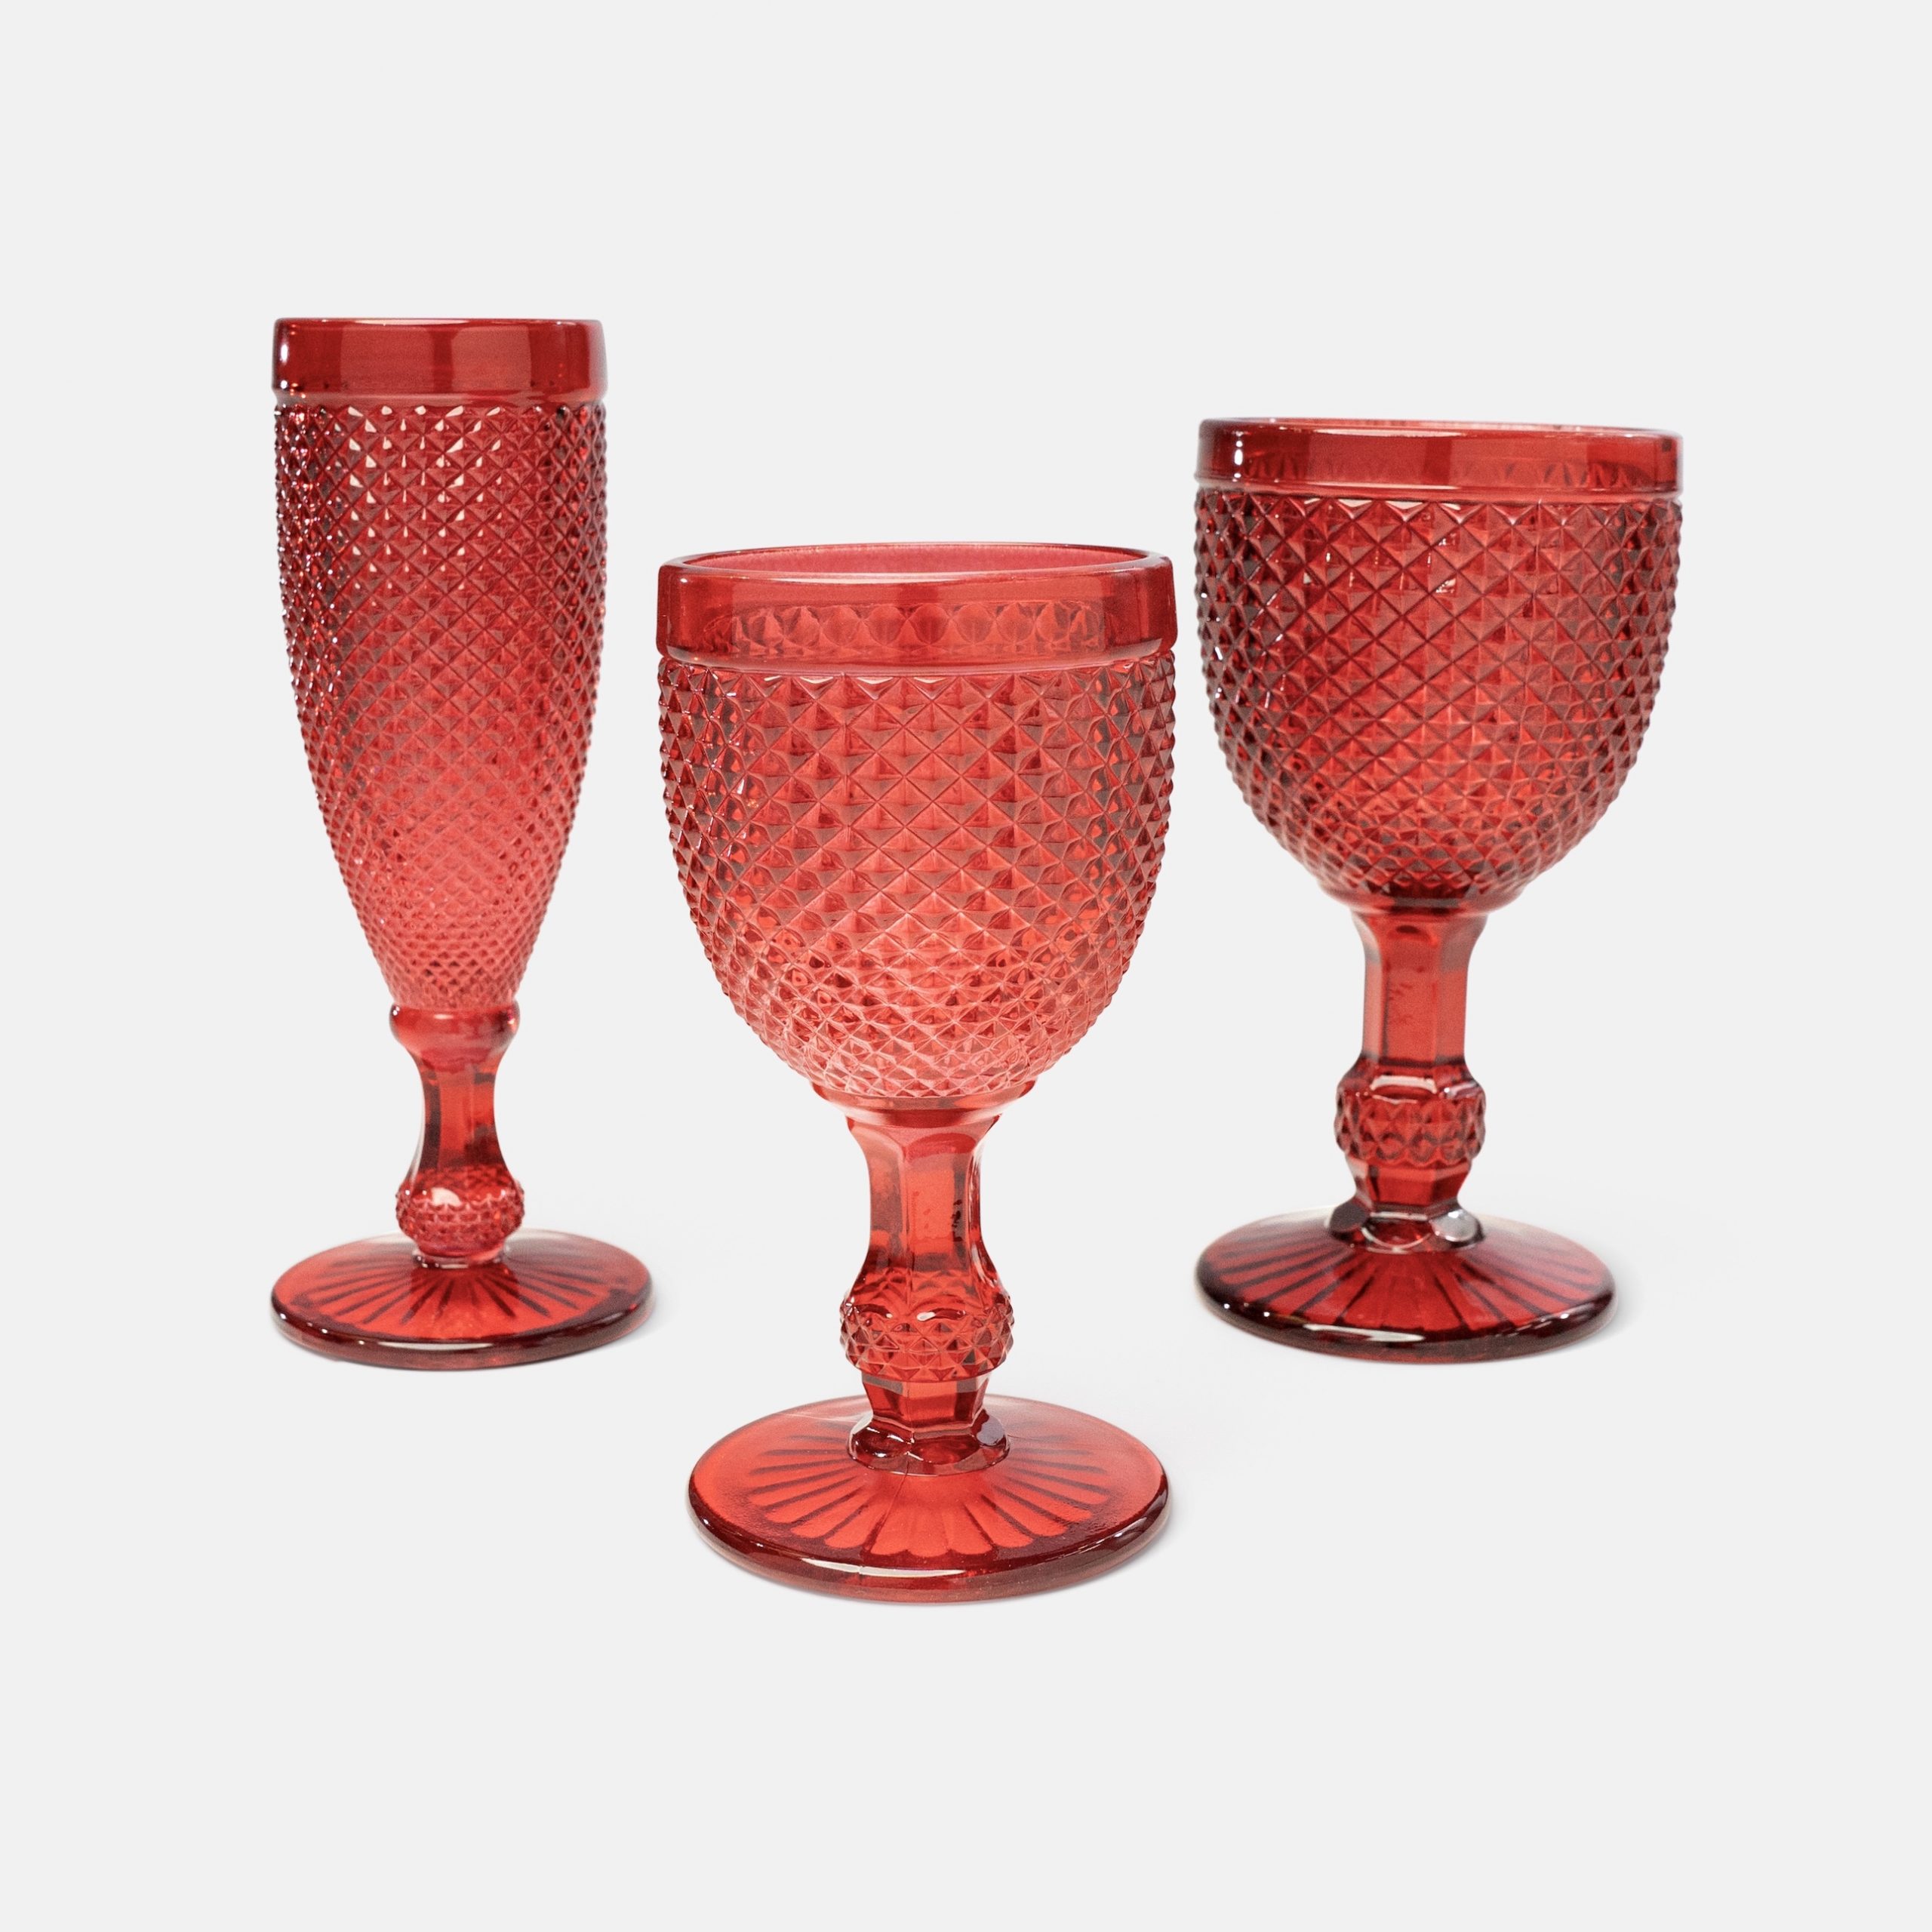 20. LUMINA Glassware, Red